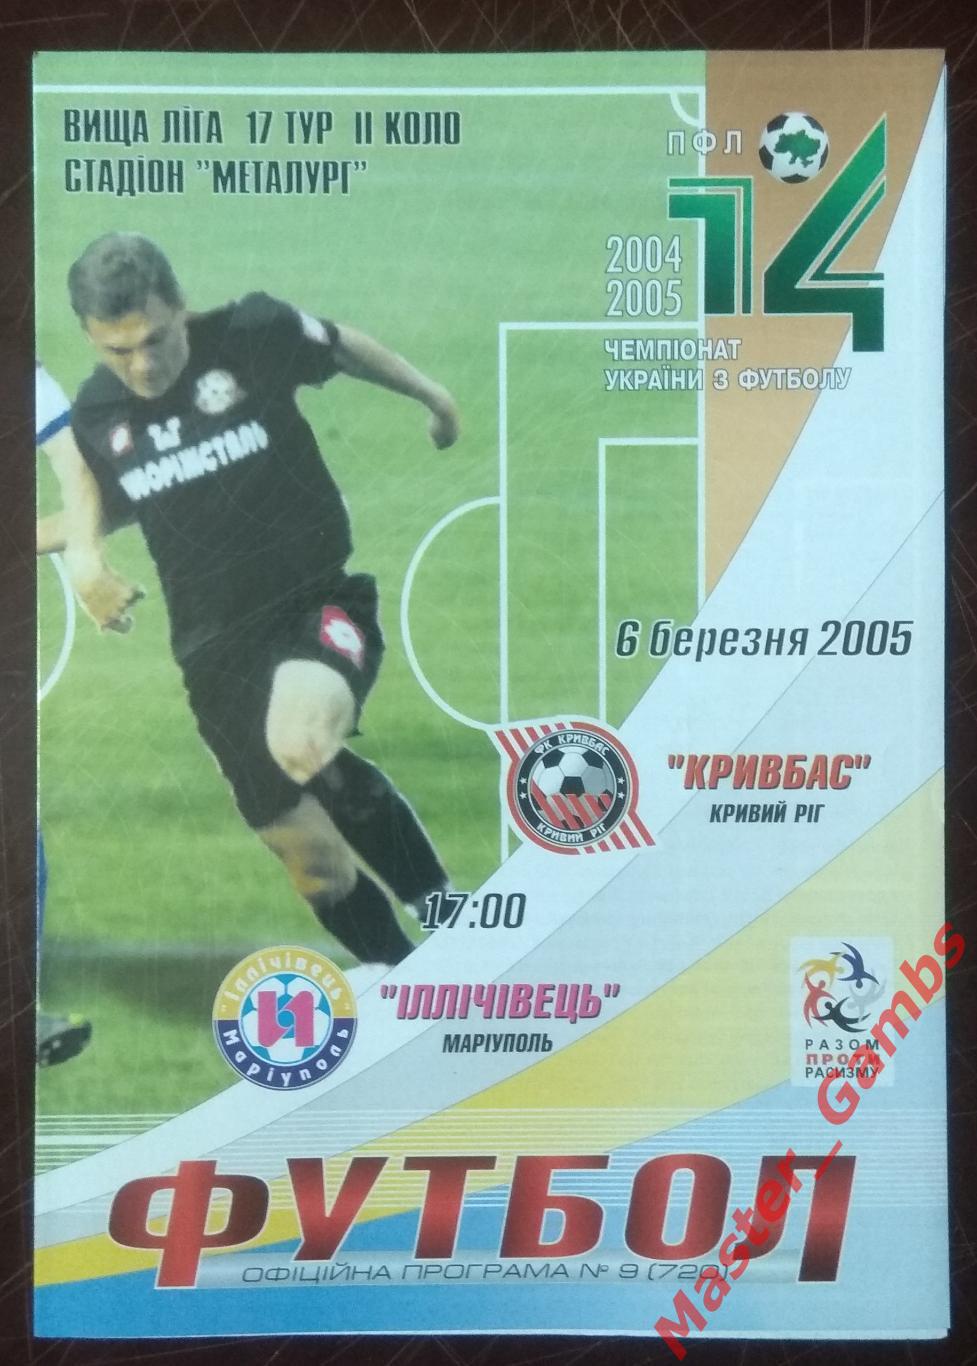 Кривбасс Кривой Рог - Ильичевец Мариуполь 2004/2005*